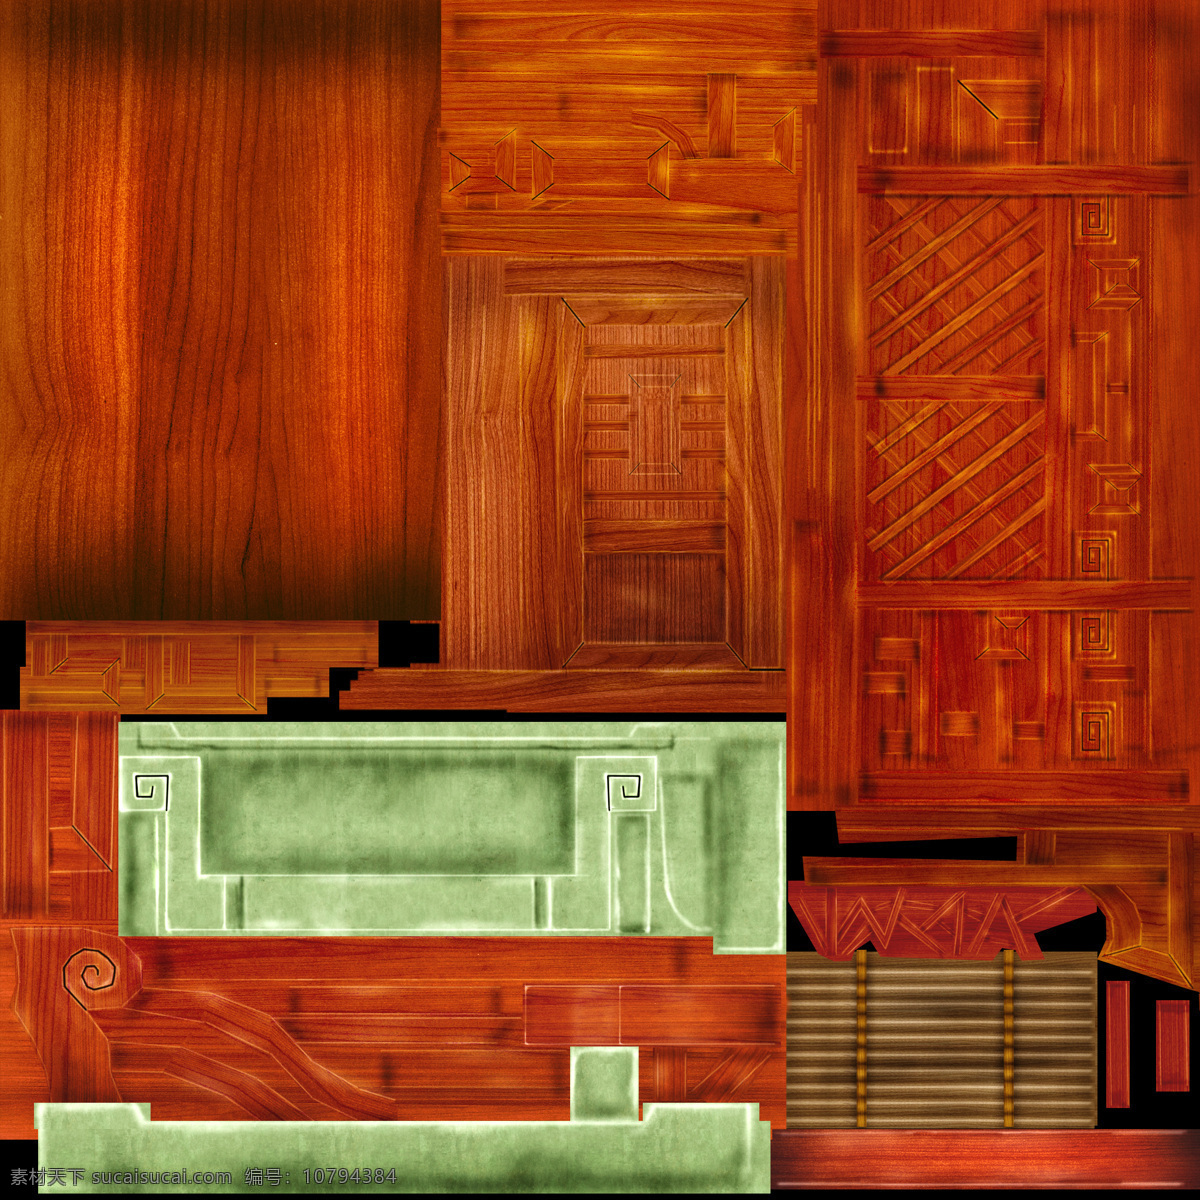 q 版 房子 3d 3d设计模型 max 古建筑 界面 游戏 游戏场景 源文件 q版房子 游戏建筑 其他模型 3d模型素材 其他3d模型